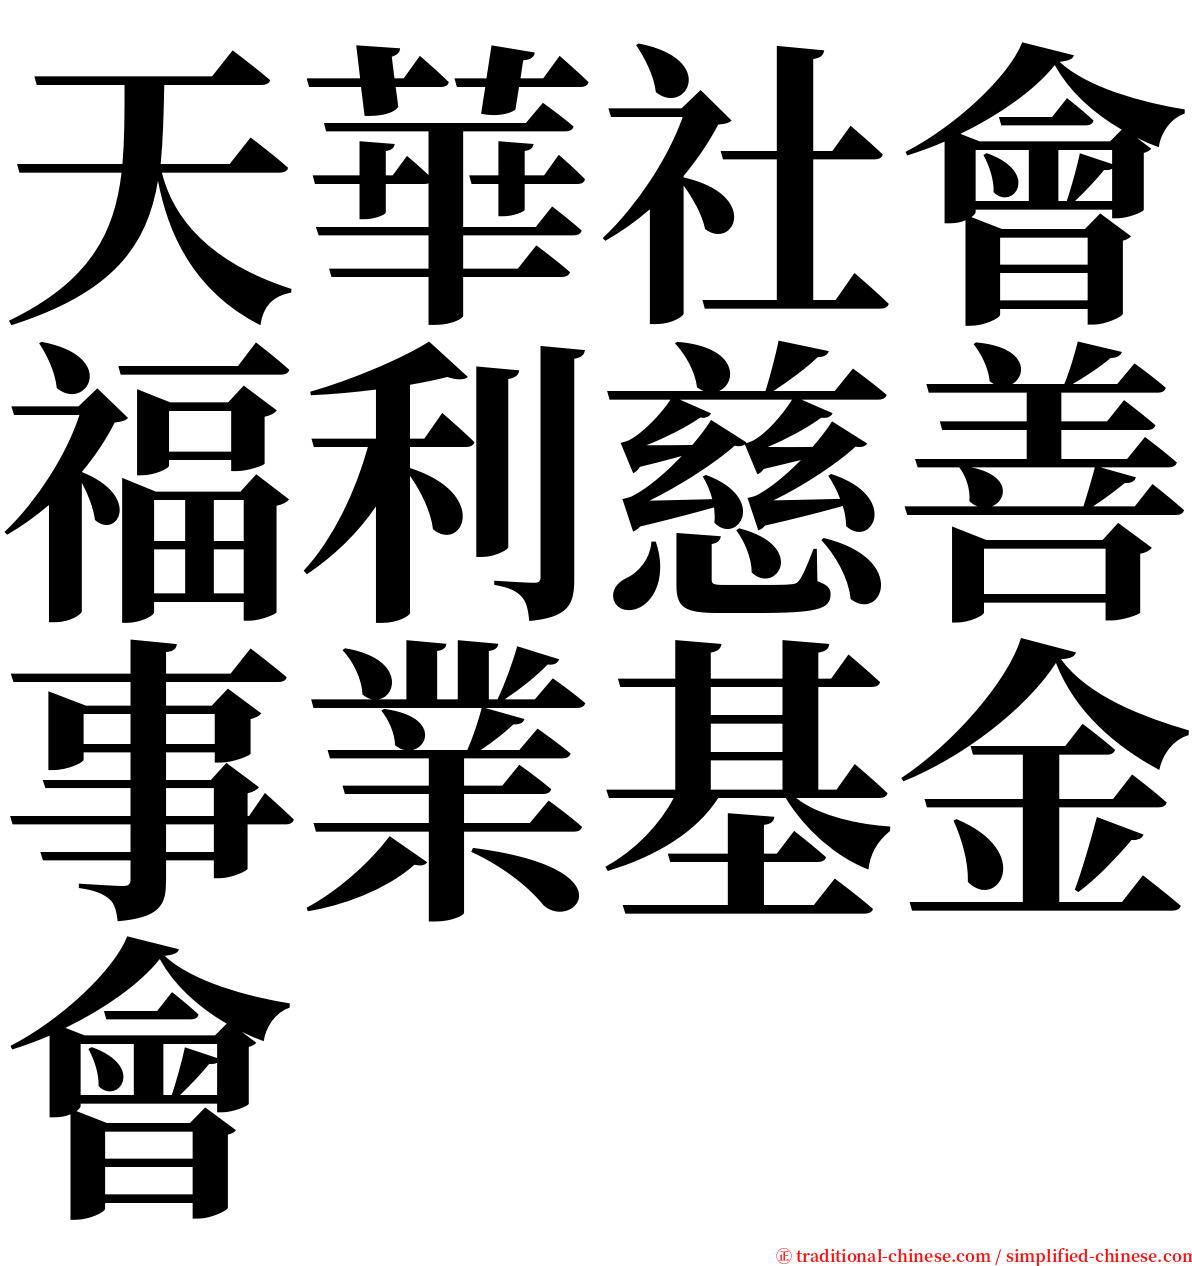 天華社會福利慈善事業基金會 serif font